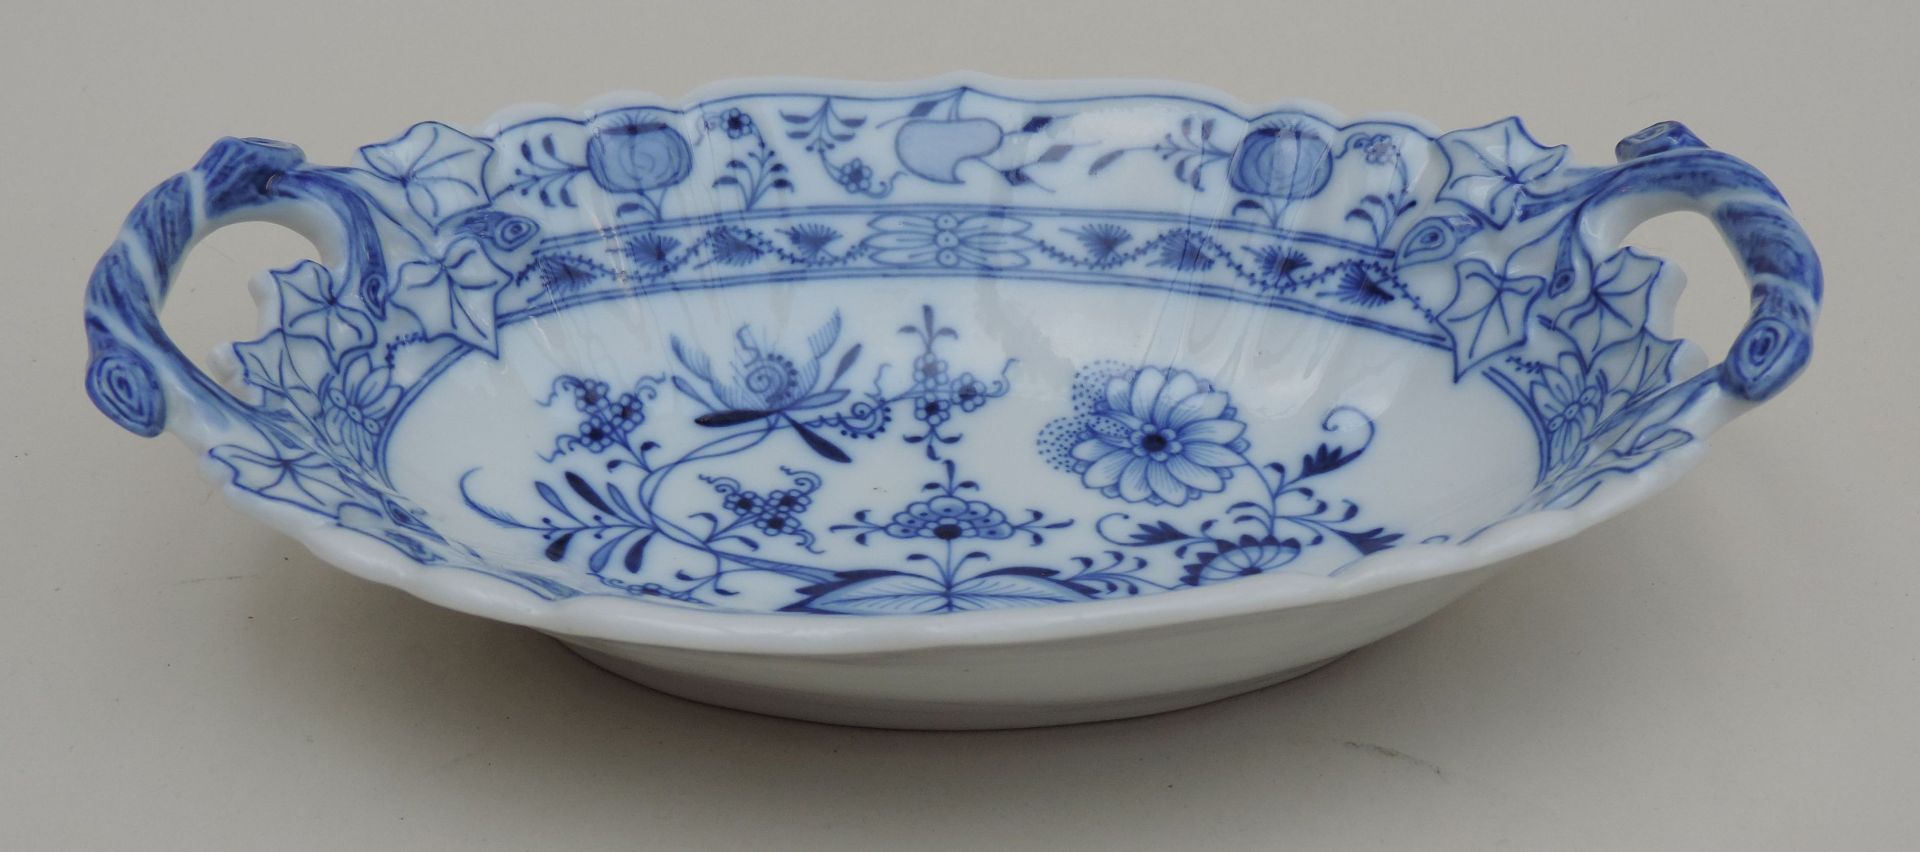 GONDELSCHALE, Meissen, Manuf Teichert, 1865-1912, blau, Bleu Ordinaire, sog, Zwiebelmuster,